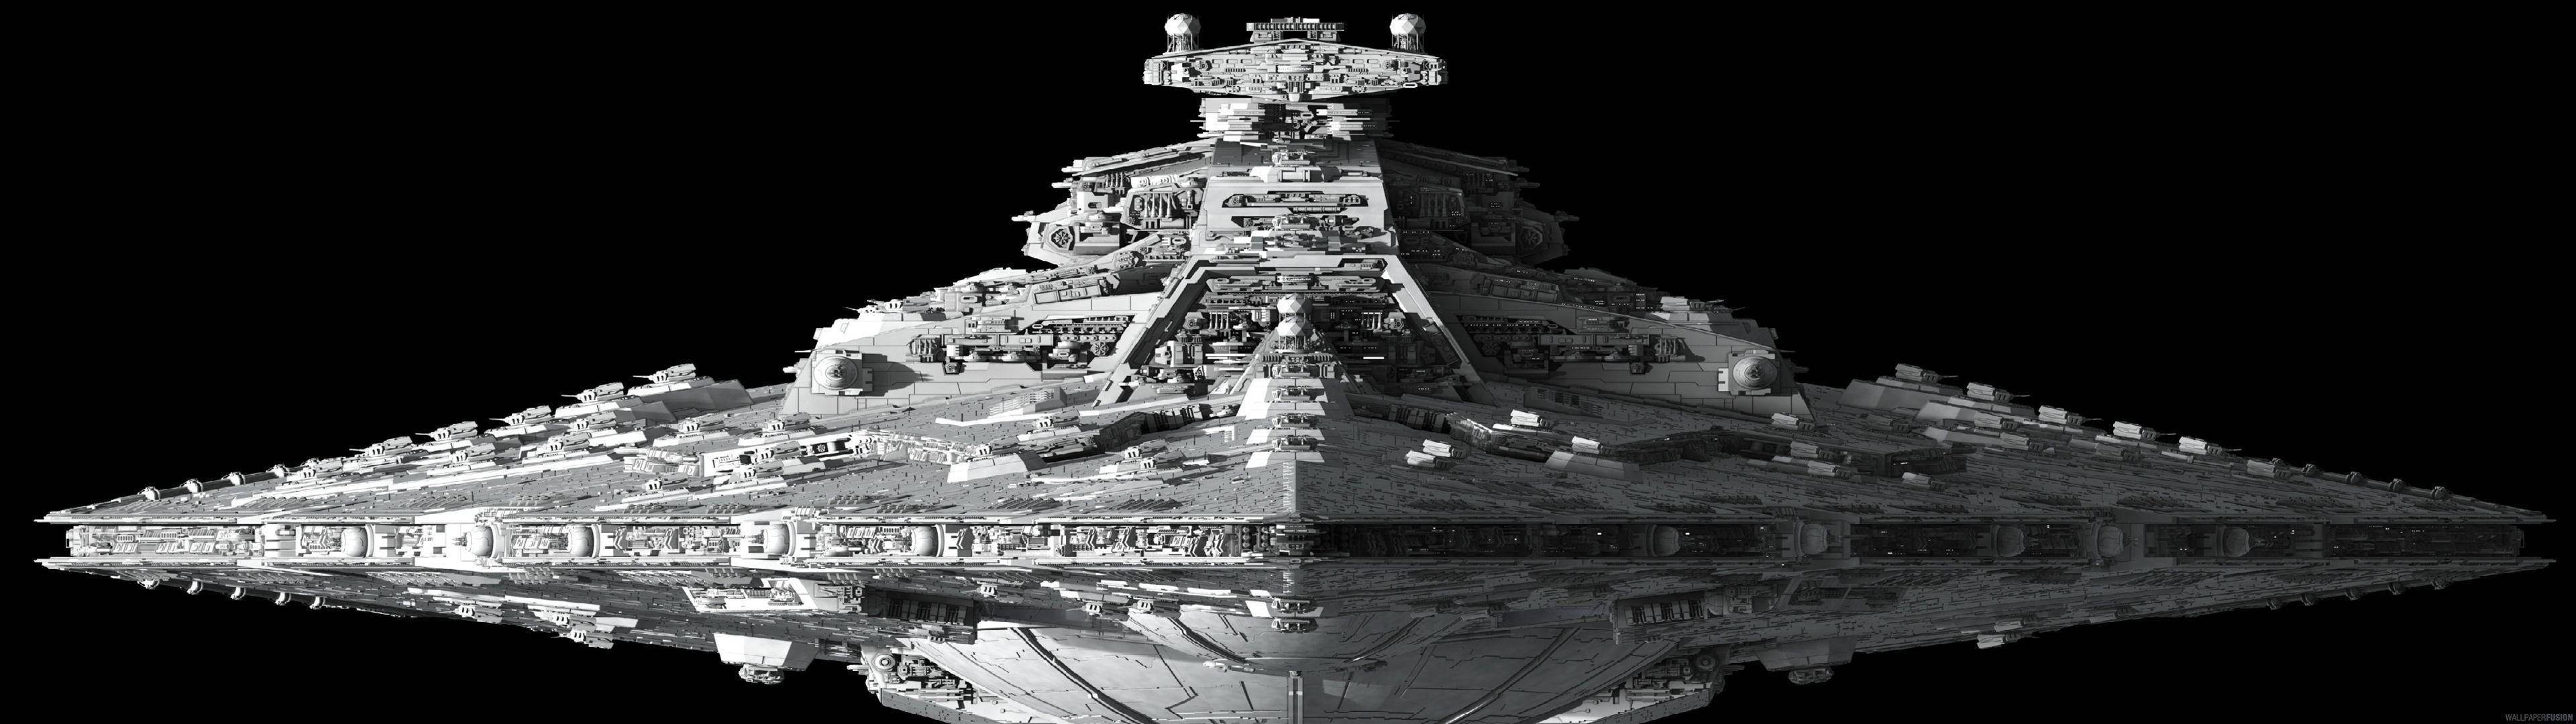 Star Destroyer – A Powerful Spaceship Wallpaper